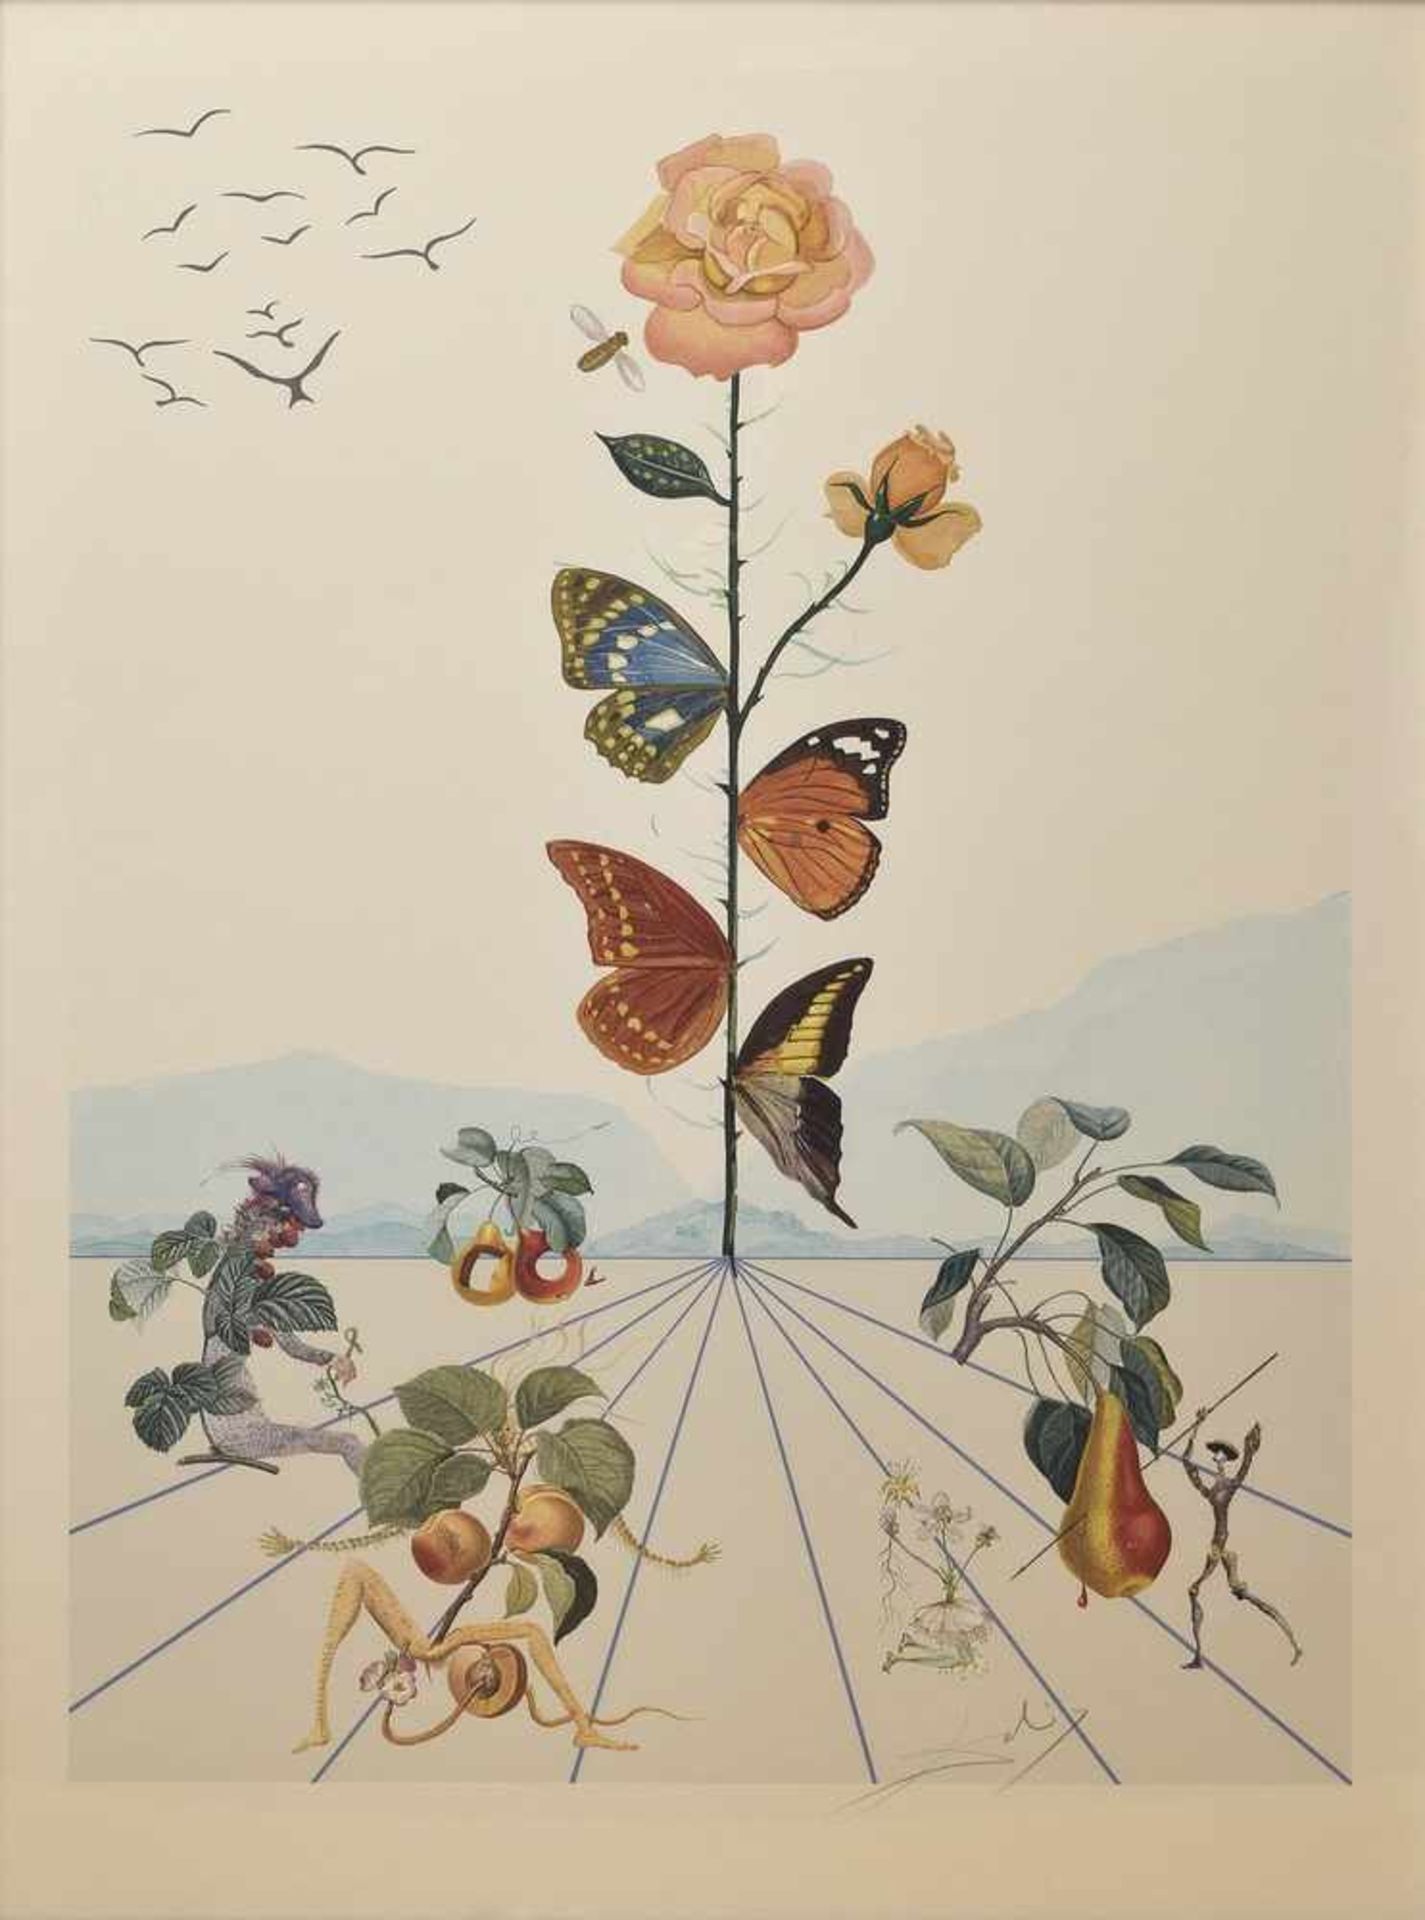 Dali, Salvador (1881-1973) "Rose", Farblithographie, u.r. sign/verso num. 3364, 103x73,5cm (m.R.